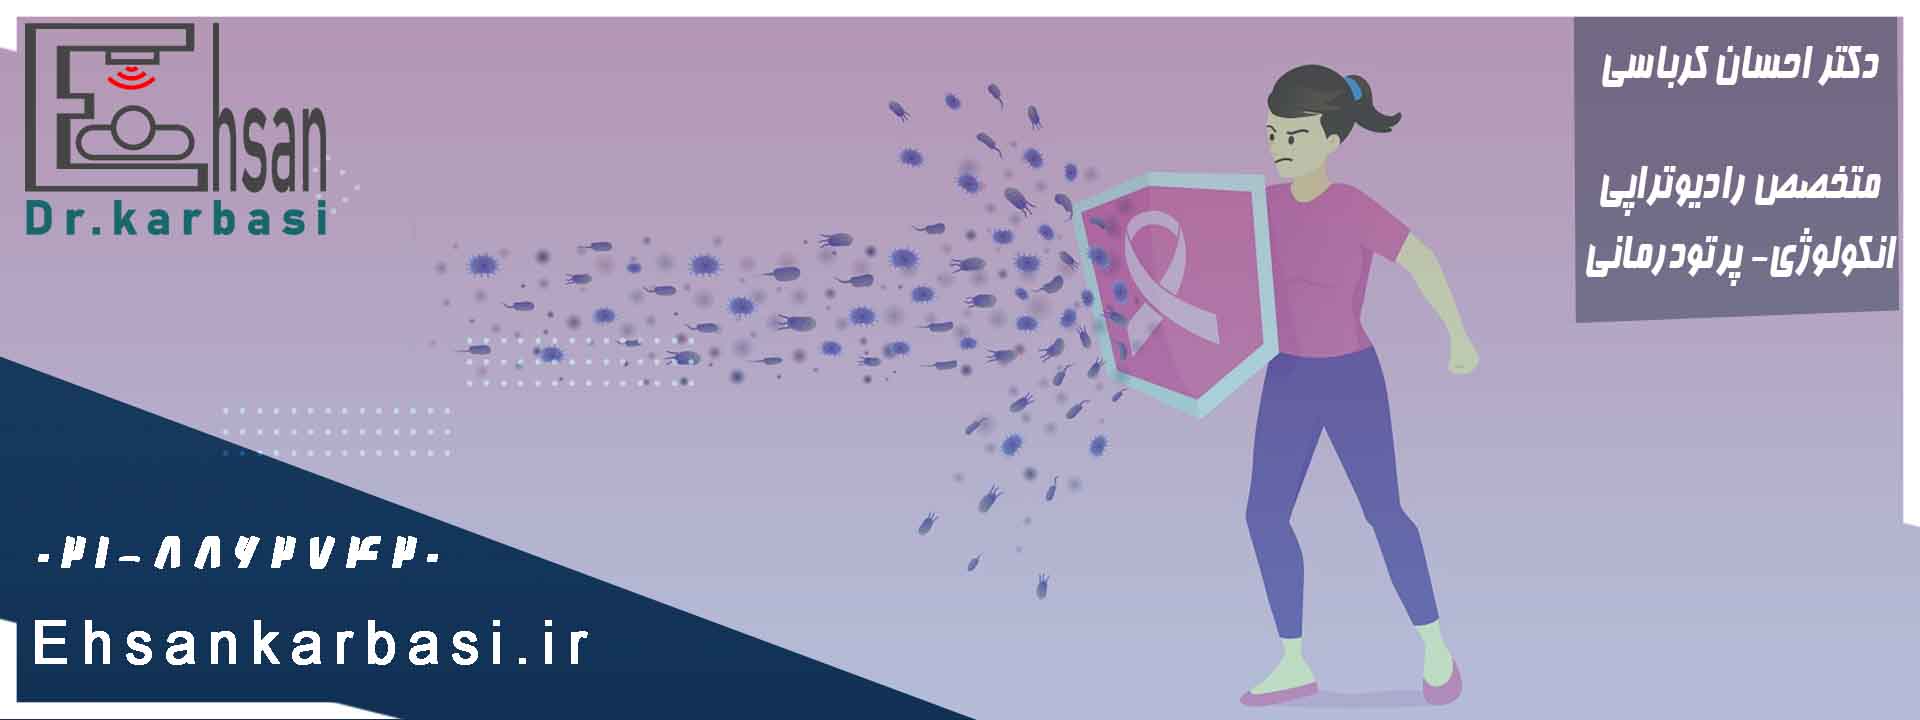 رادیوتراپی سرطان پستان